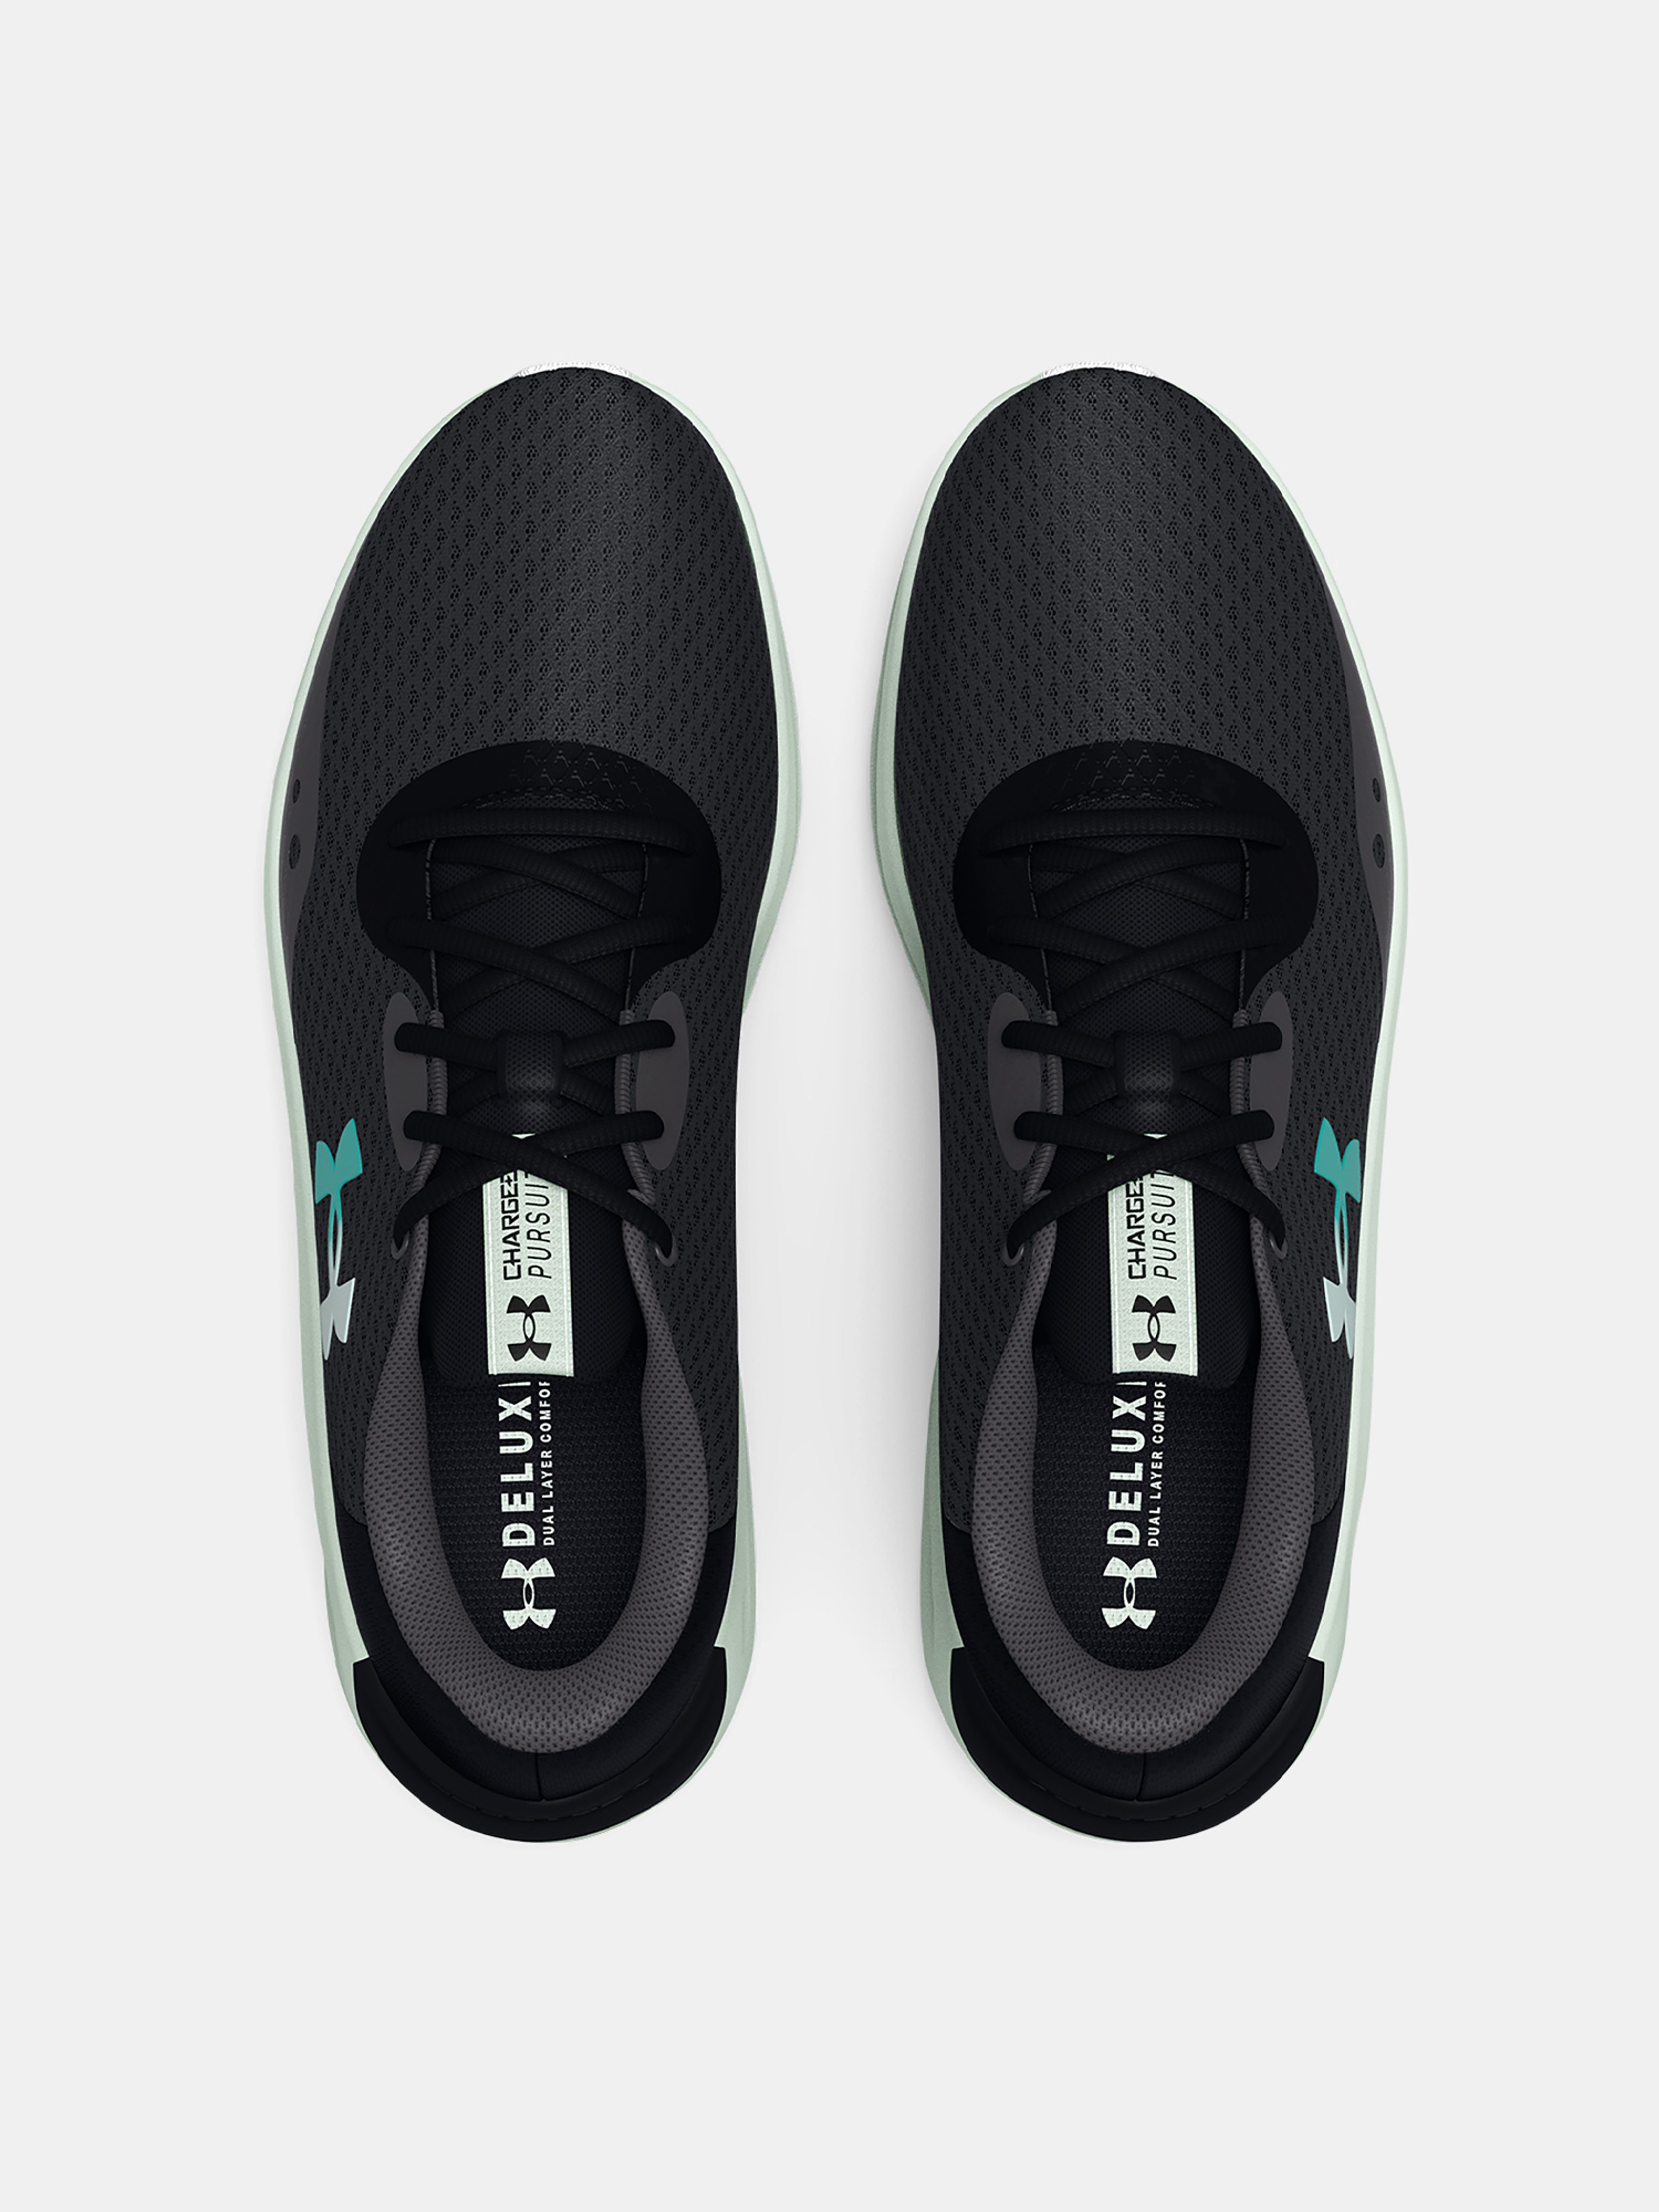  UA Charged Pursuit 3-BLK - men's running shoes - UNDER  ARMOUR - 49.75 € - outdoorové oblečení a vybavení shop